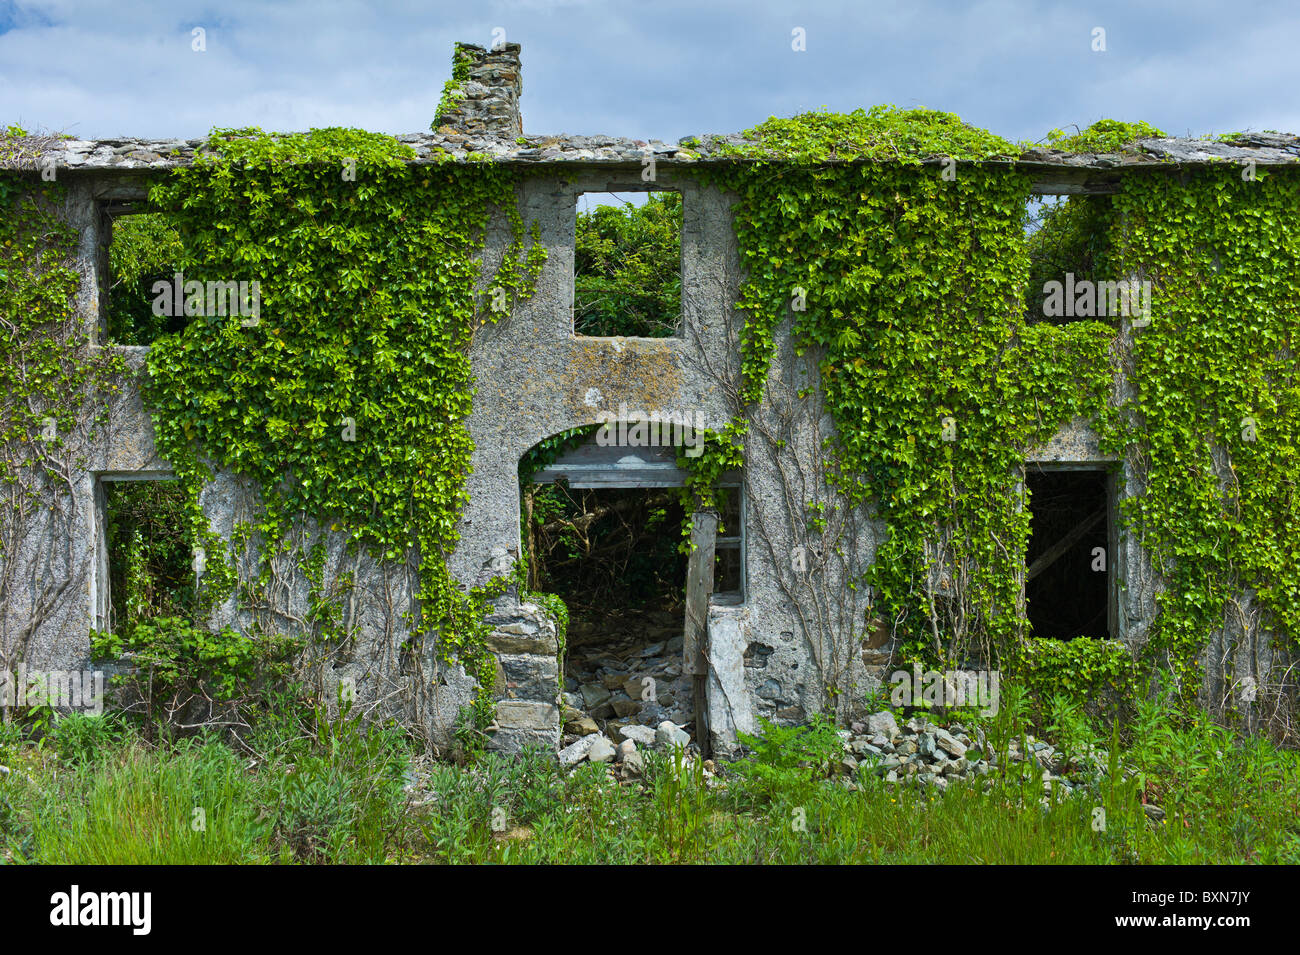 Maison en ruine abandonné dans le besoin de rénovation, couverte de lierre et autres plantes grimpantes en Co Wexford, Irlande Banque D'Images